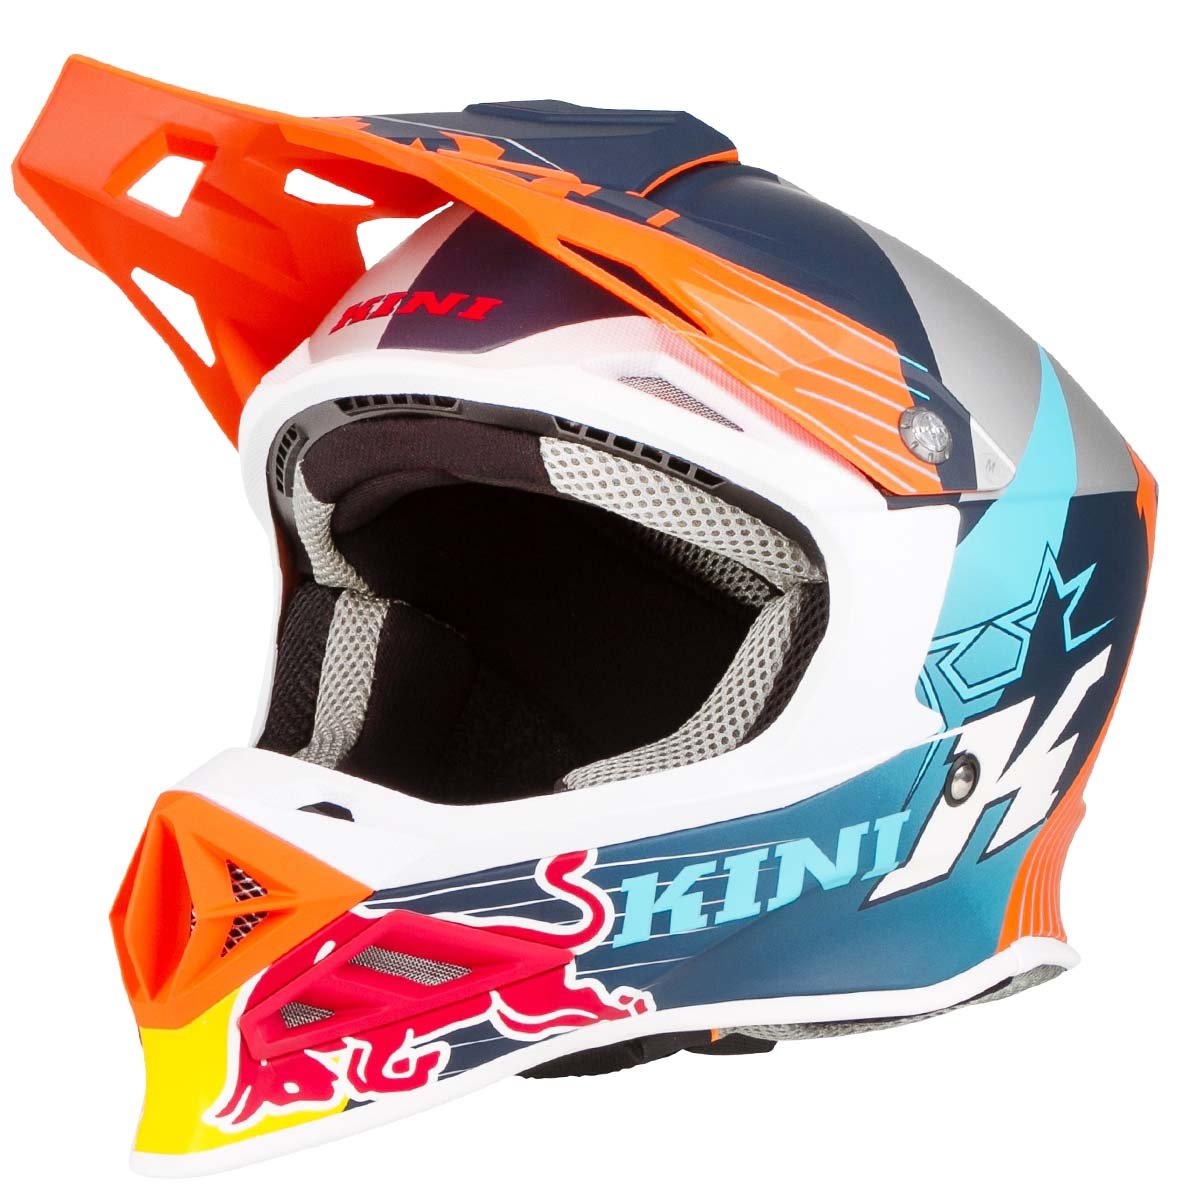 Kini Red Bull Helmet Competition Orange/White/Navy